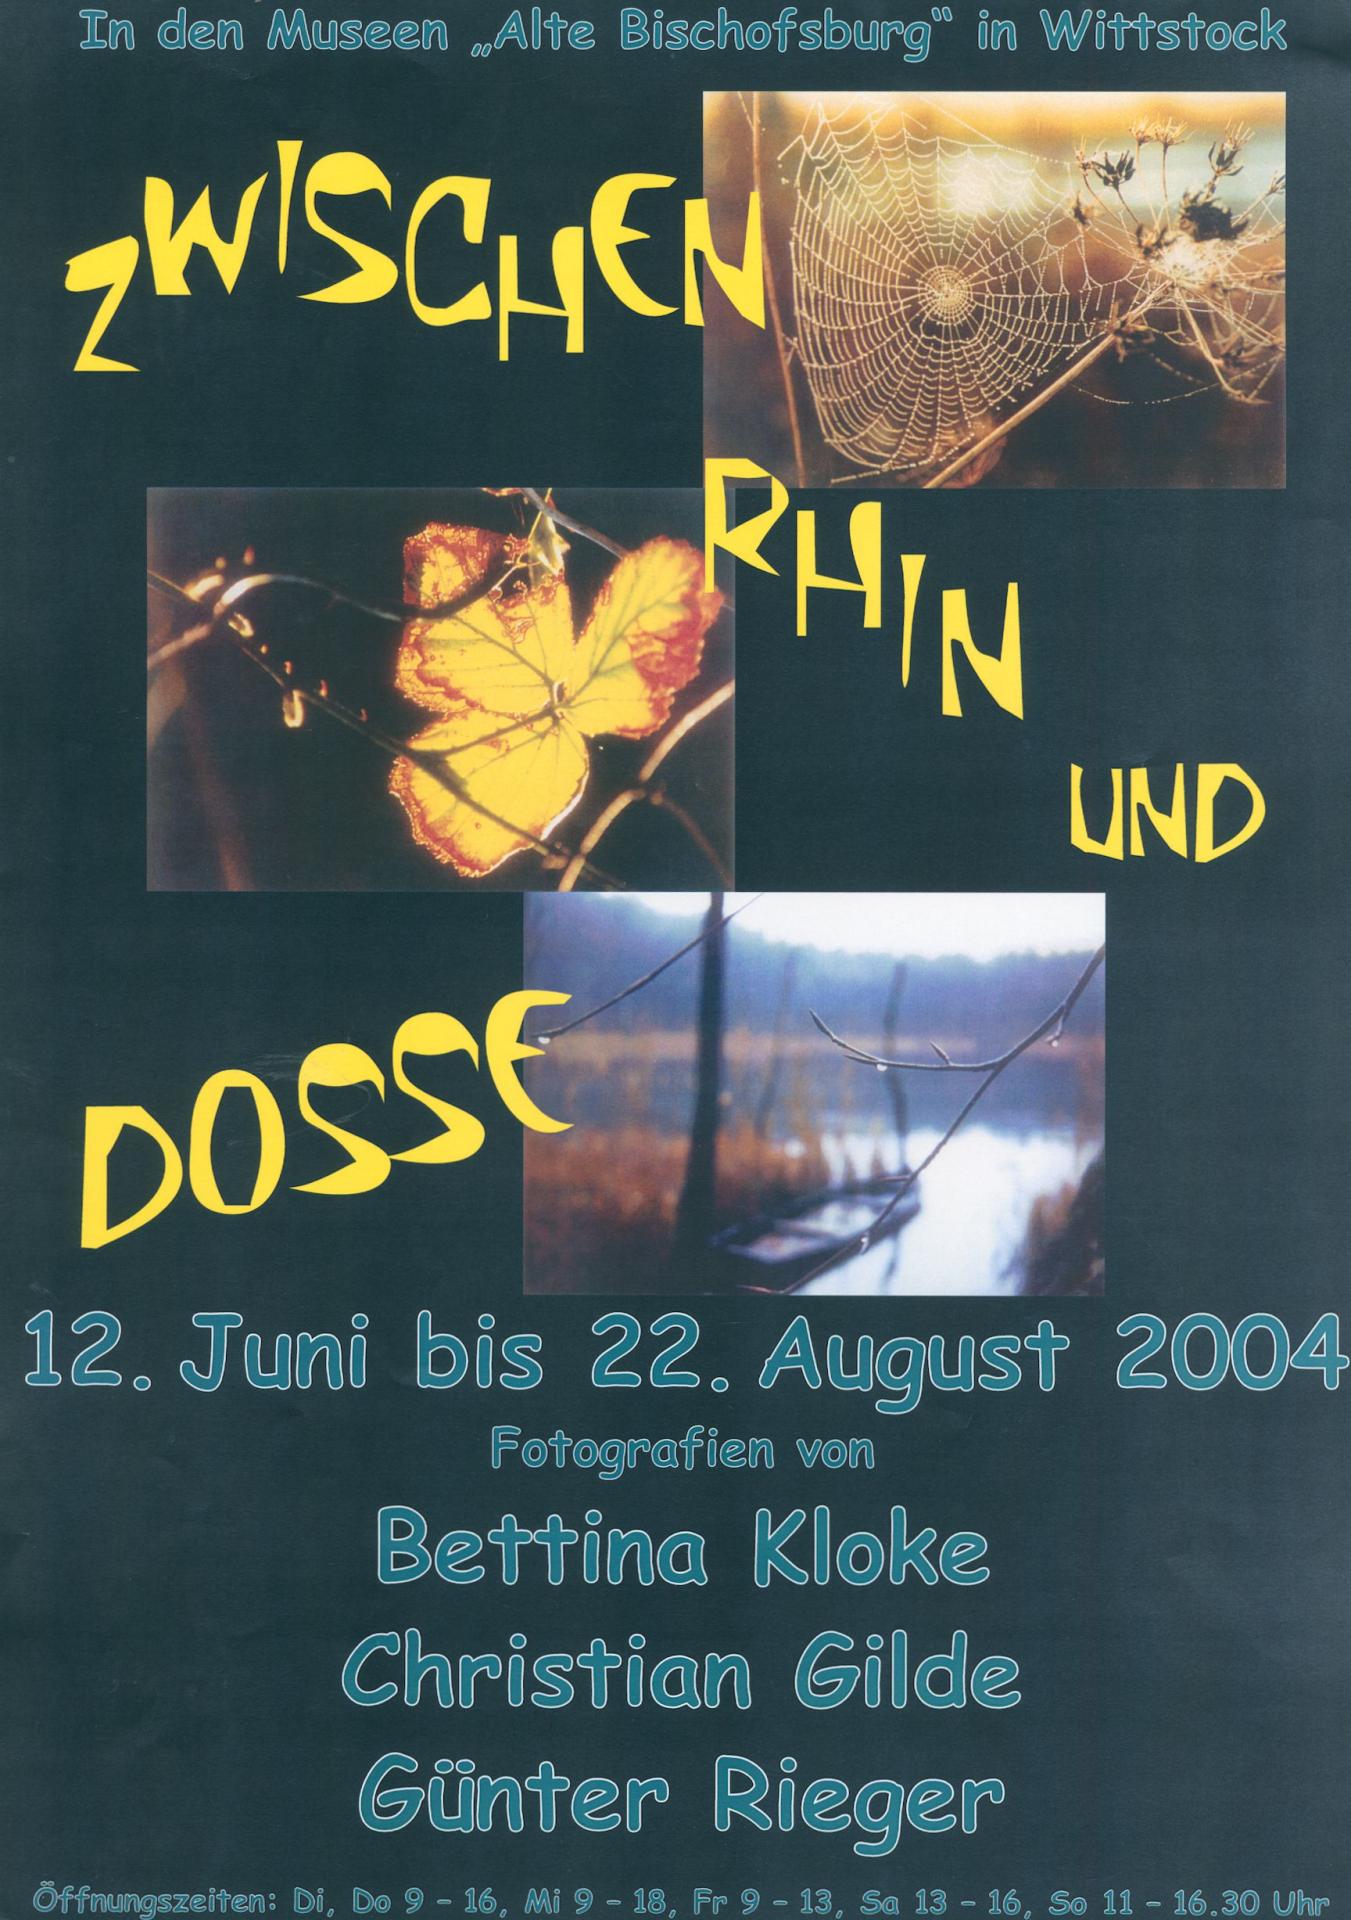 2004 Zwischen Rhin und Dosse - Fotografien von Bettina Kloke, Christian Gilde, Günter Rieger